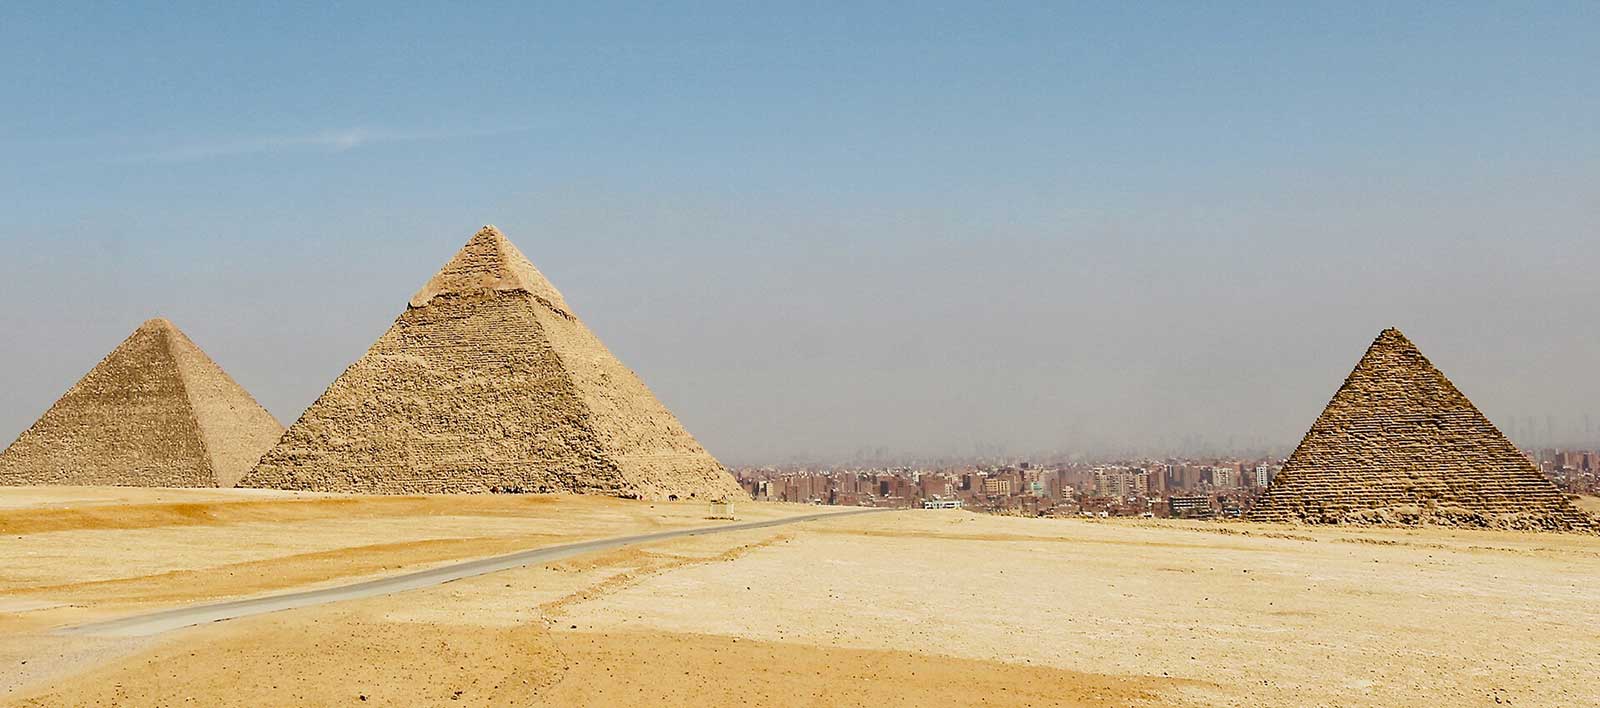 Explore Egypt - Ancient Civilizations along the Nile 8D/7N - Beyonder